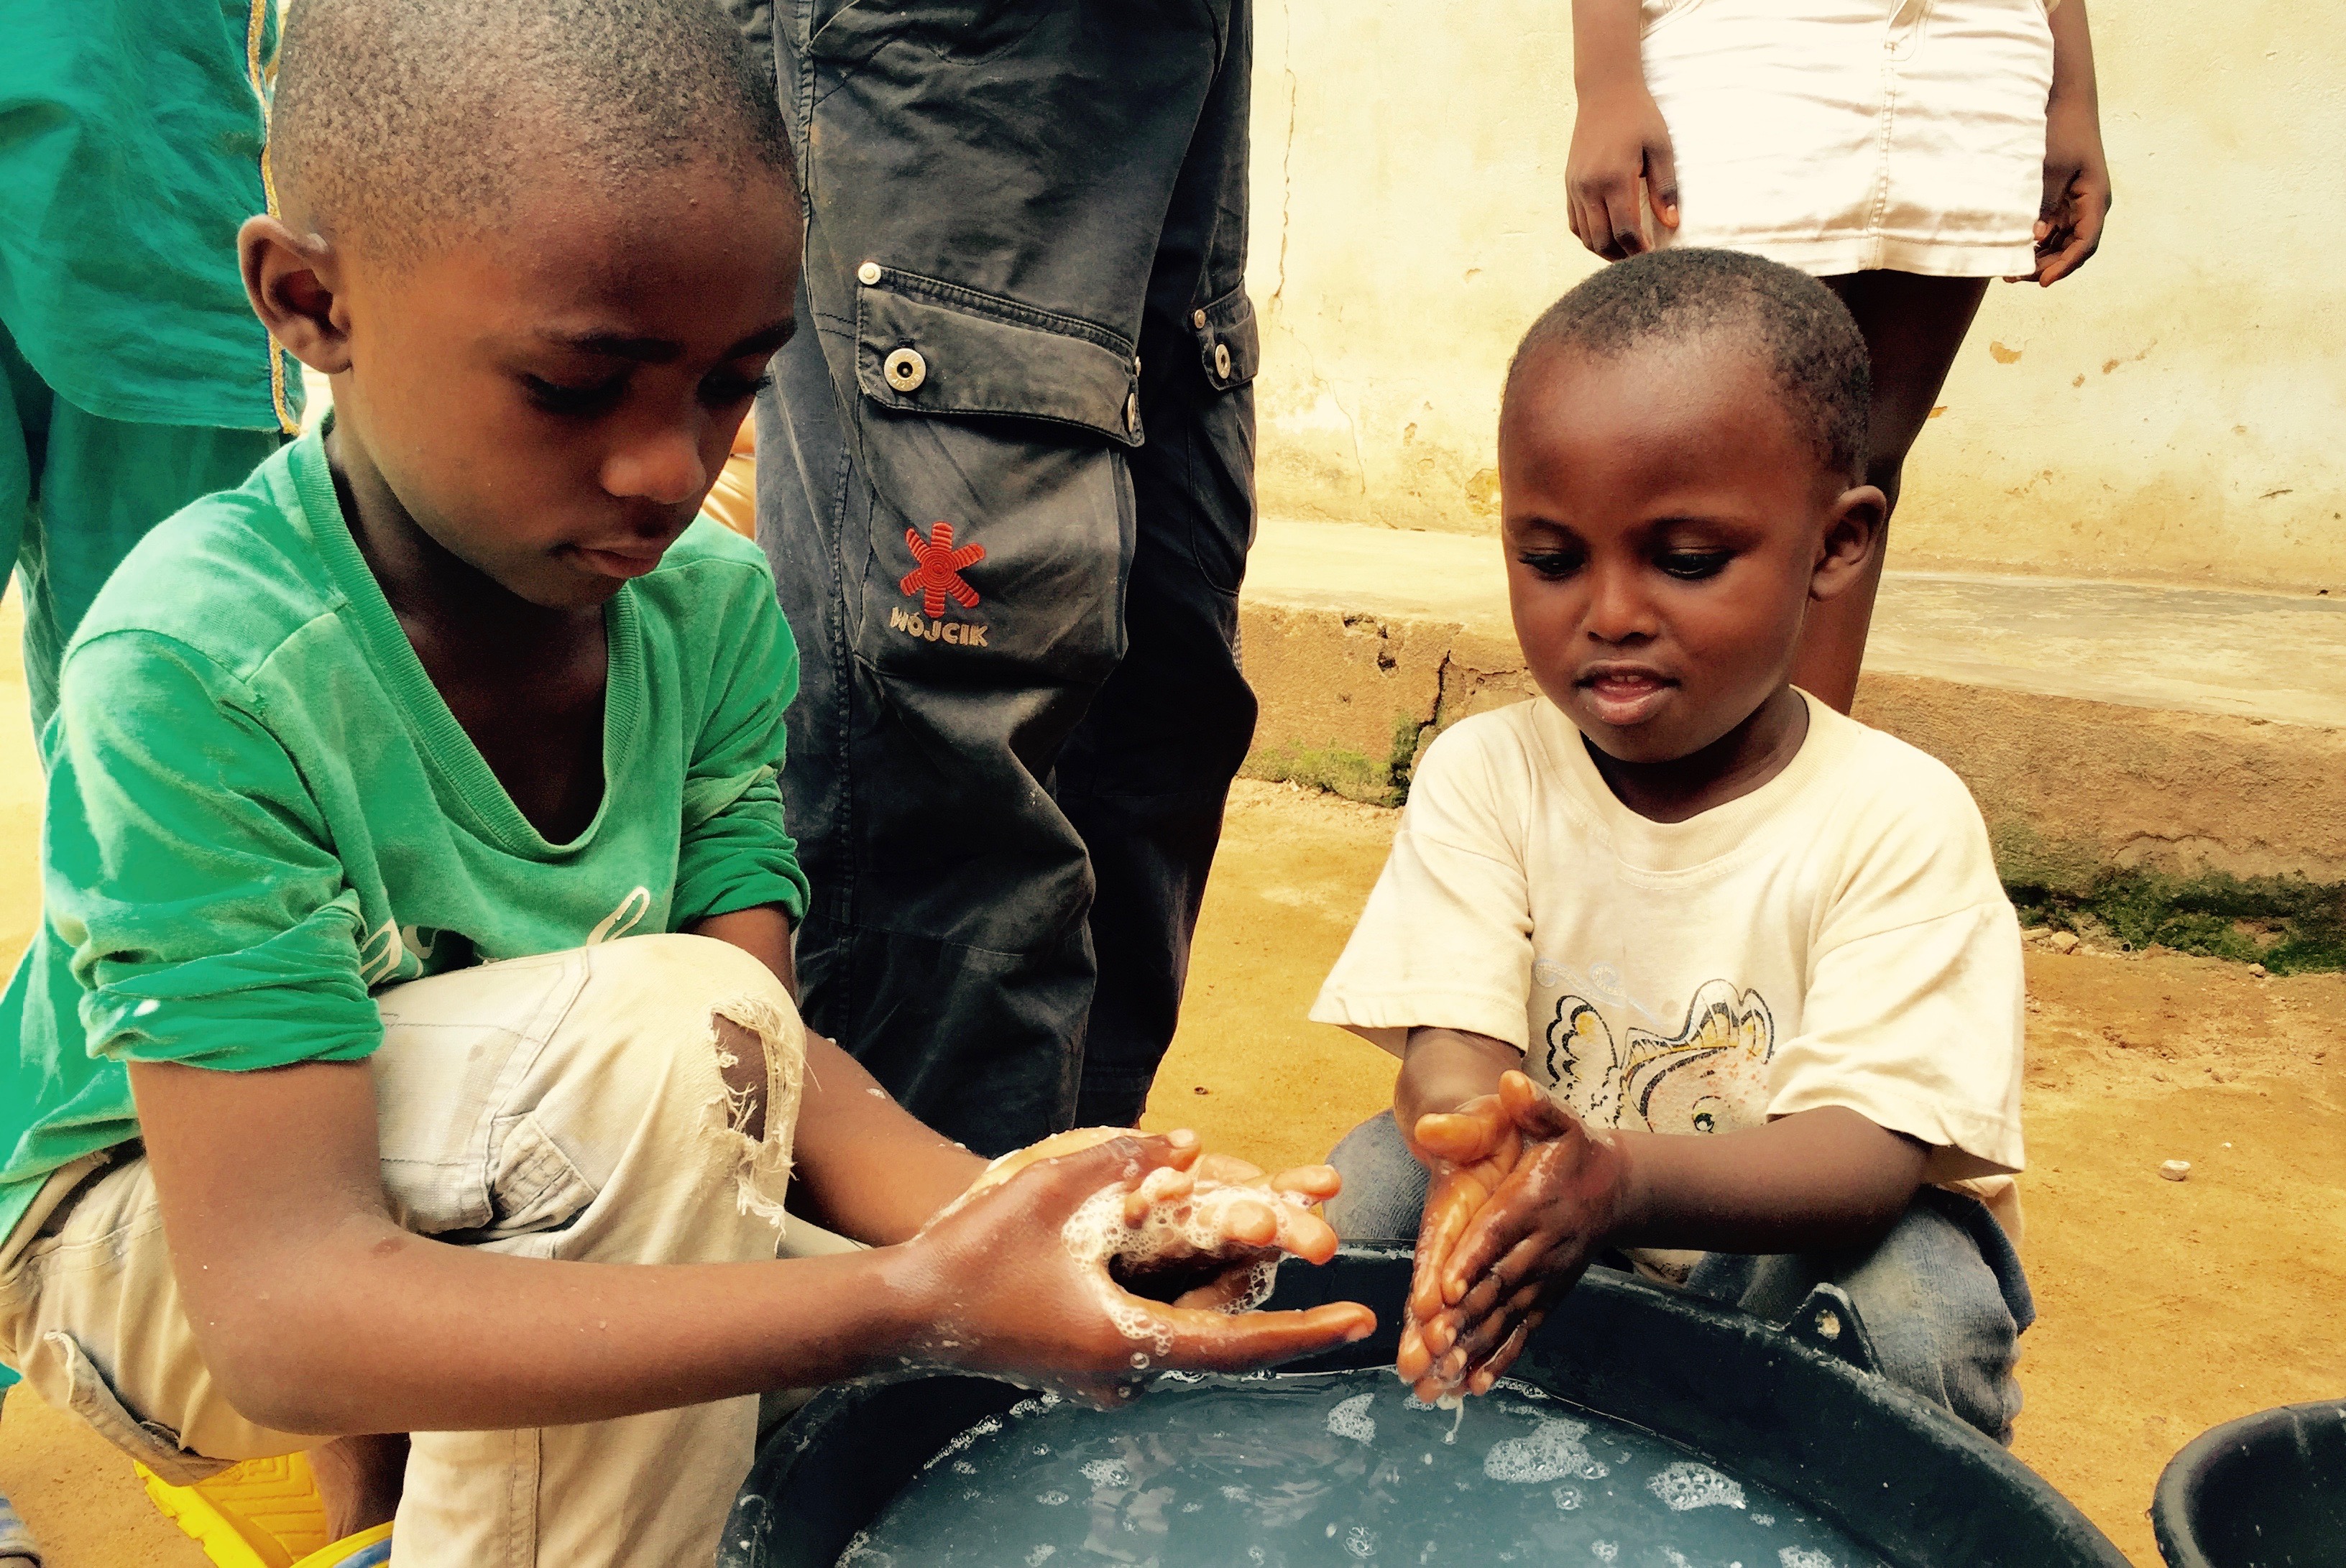 La distribuzione di sapone in regioni colpite dalla povertà migliora significativamente l’igiene delle mani della popolazione locale.